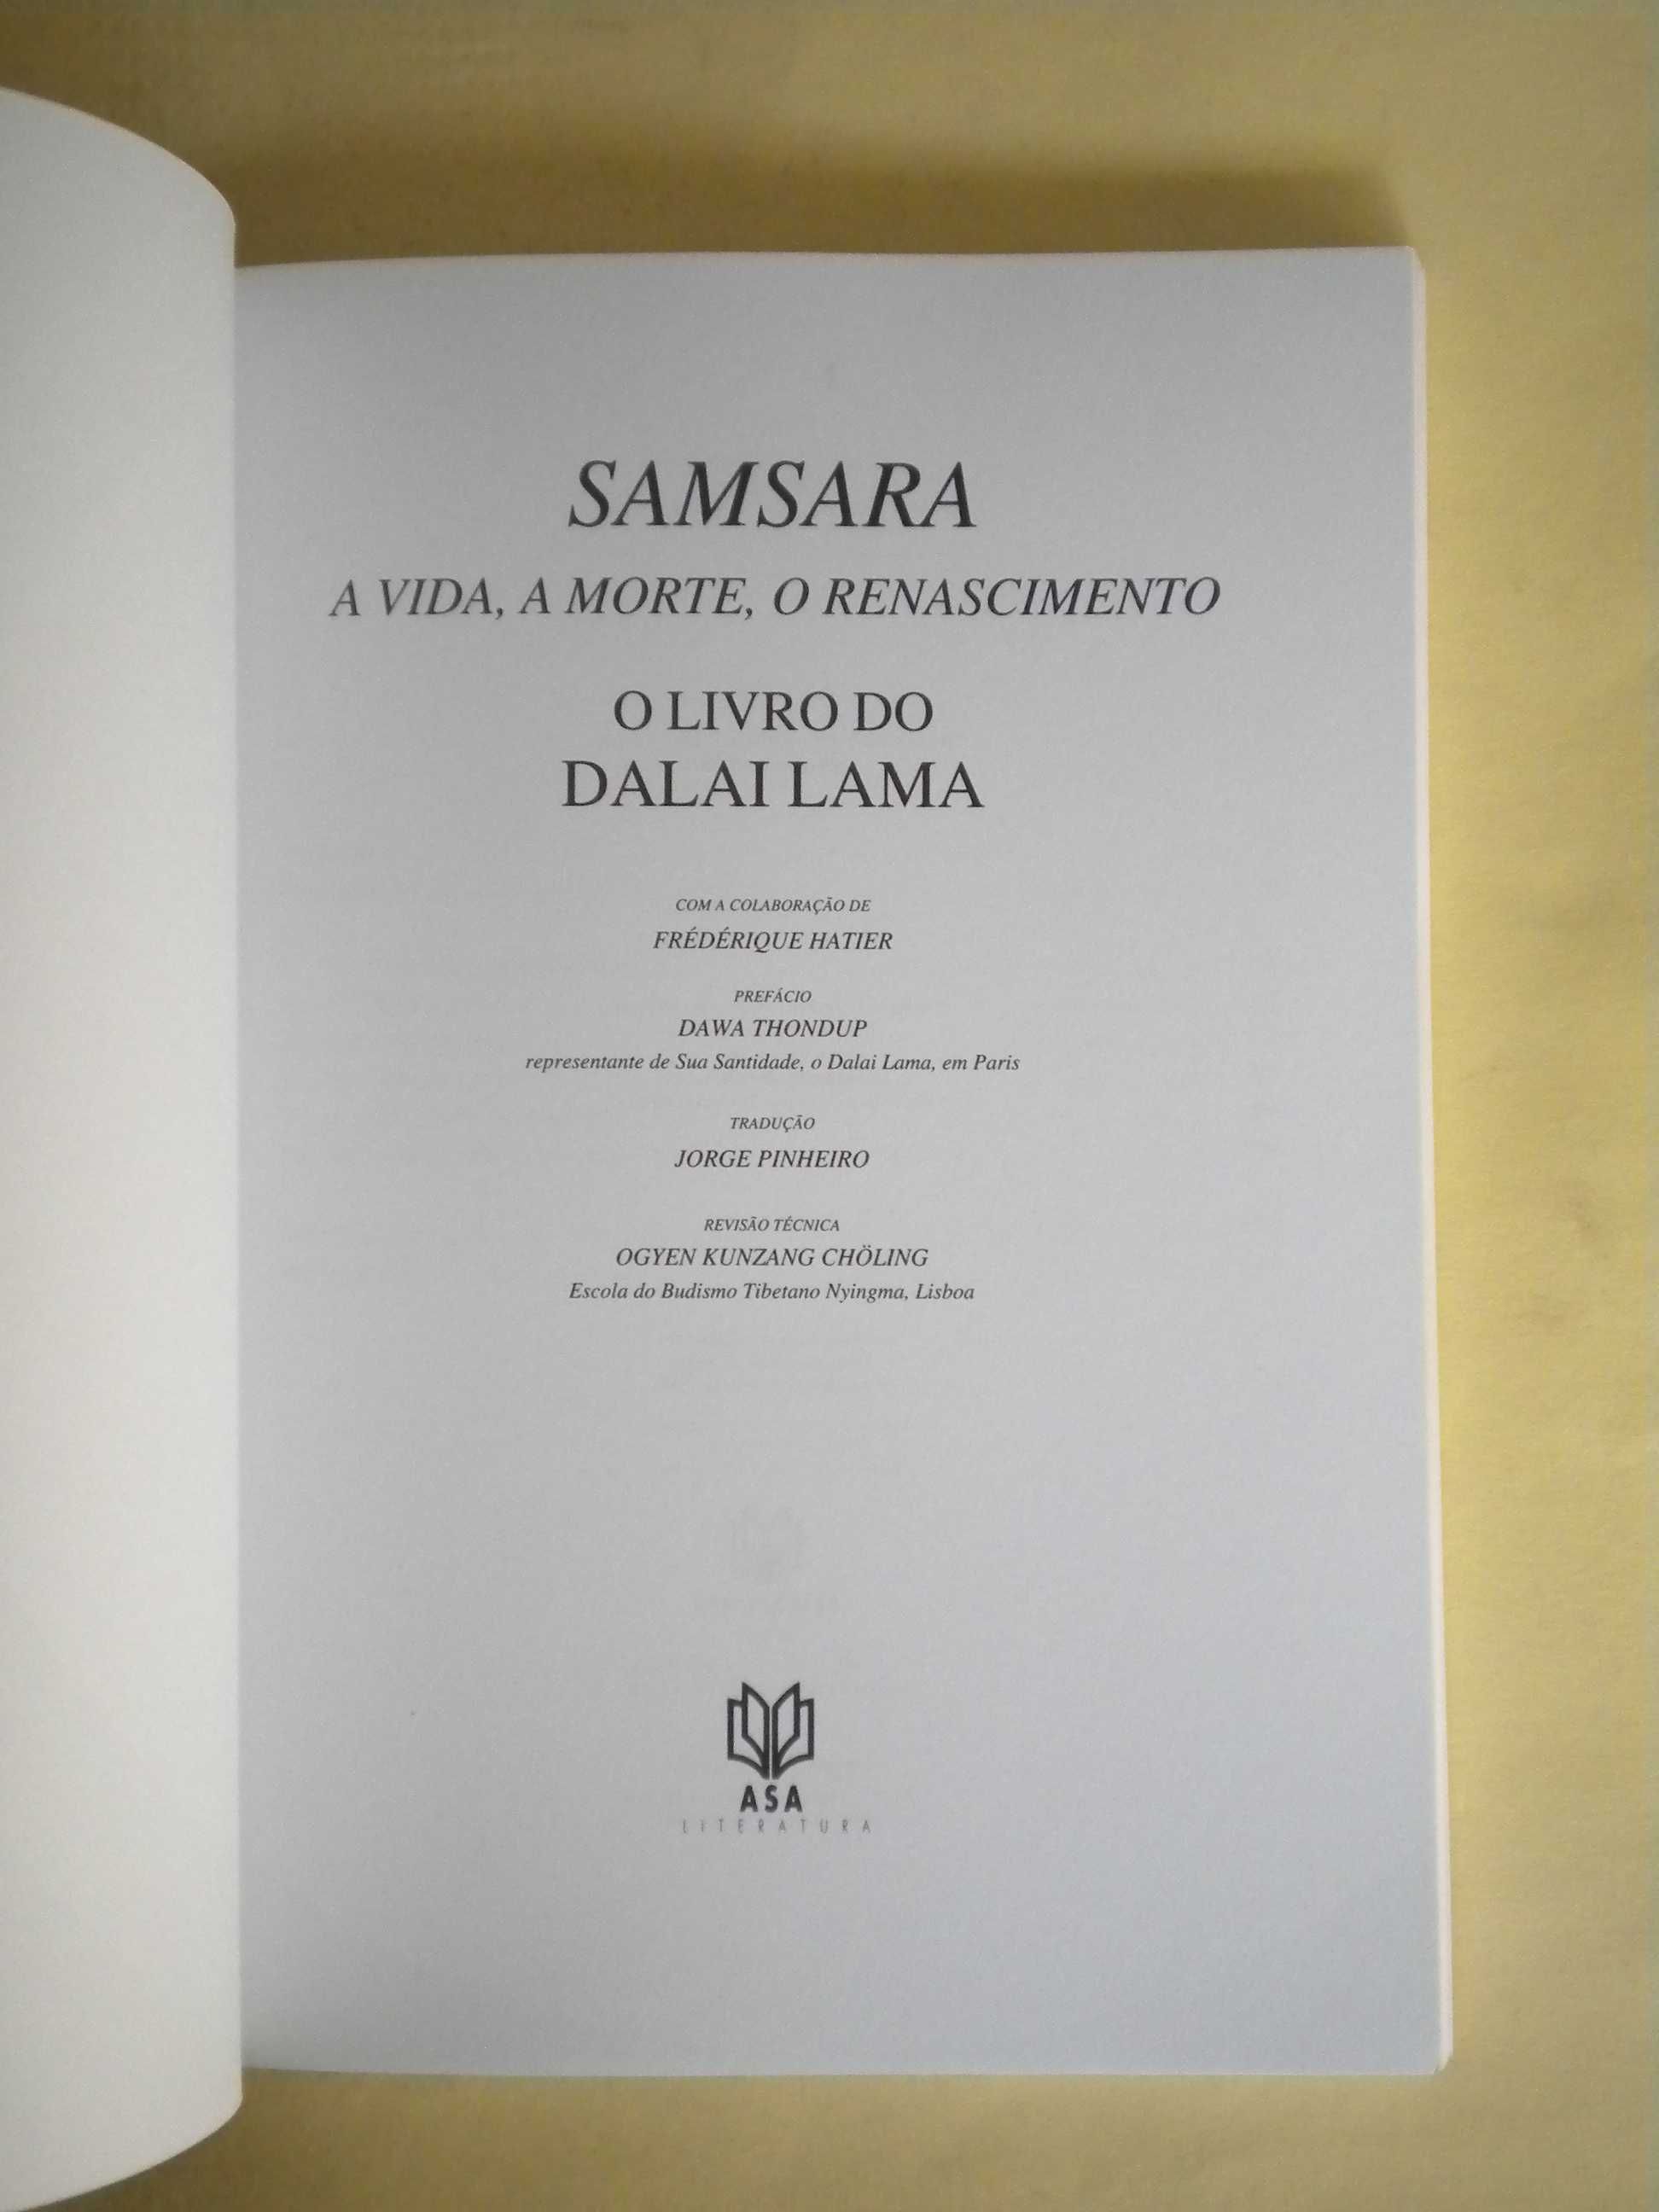 Samsara
A Vida, A Morte, O Renascimento
de Dalai Lama